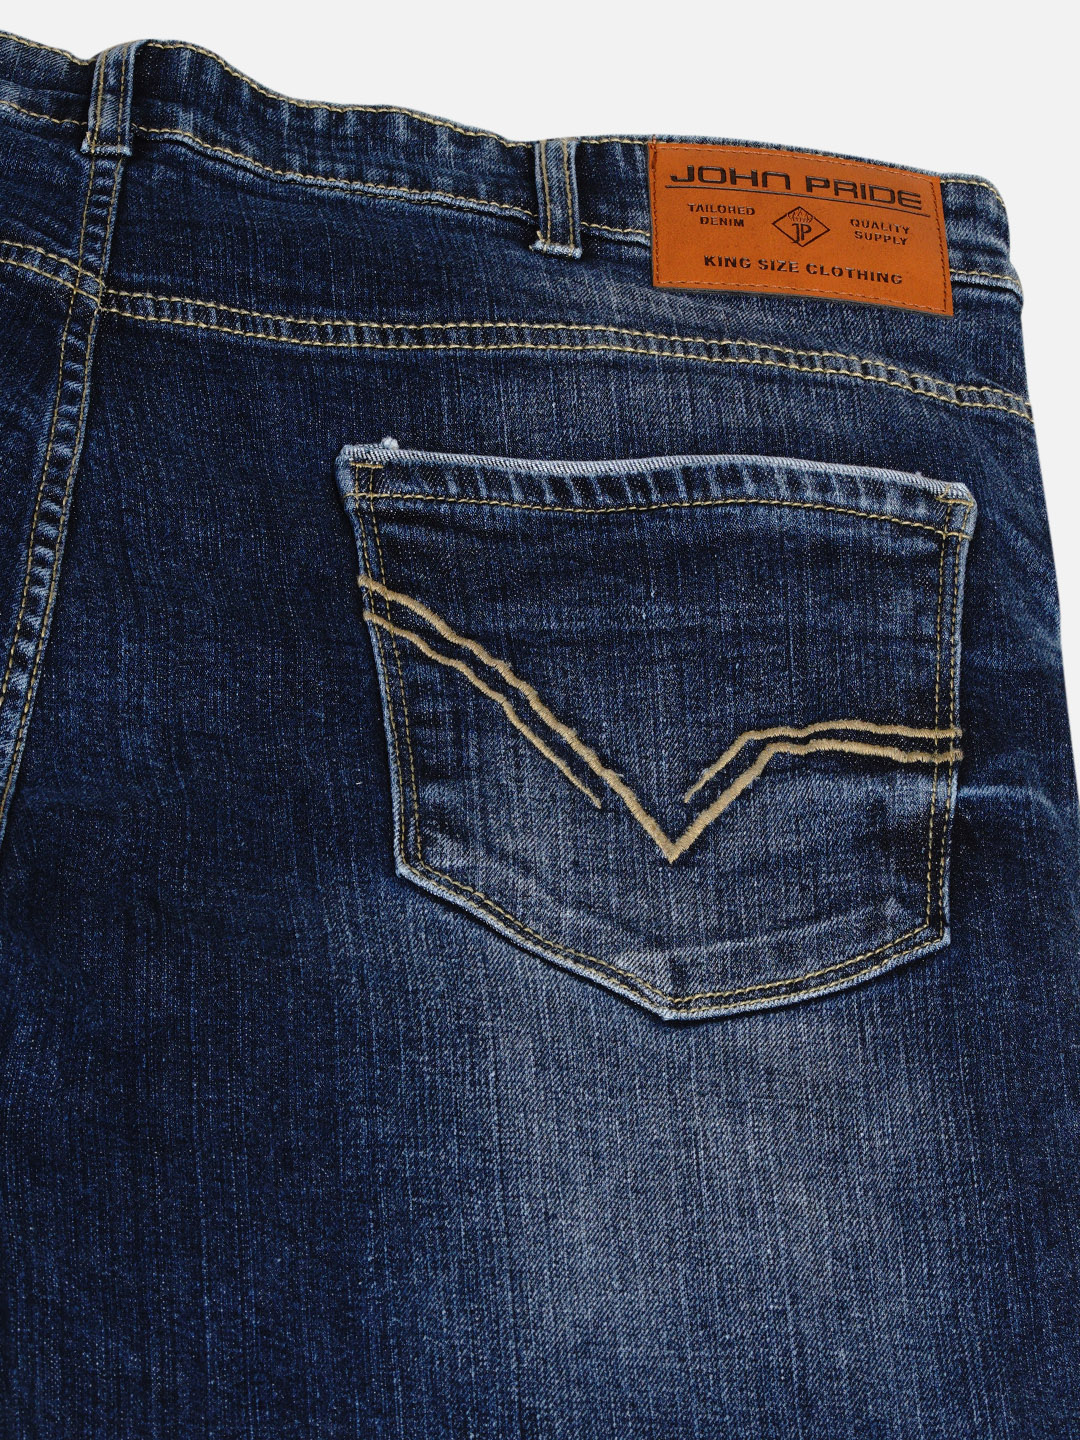 affordables/jeans/EJPJ2031/ejpj2031-2.jpg